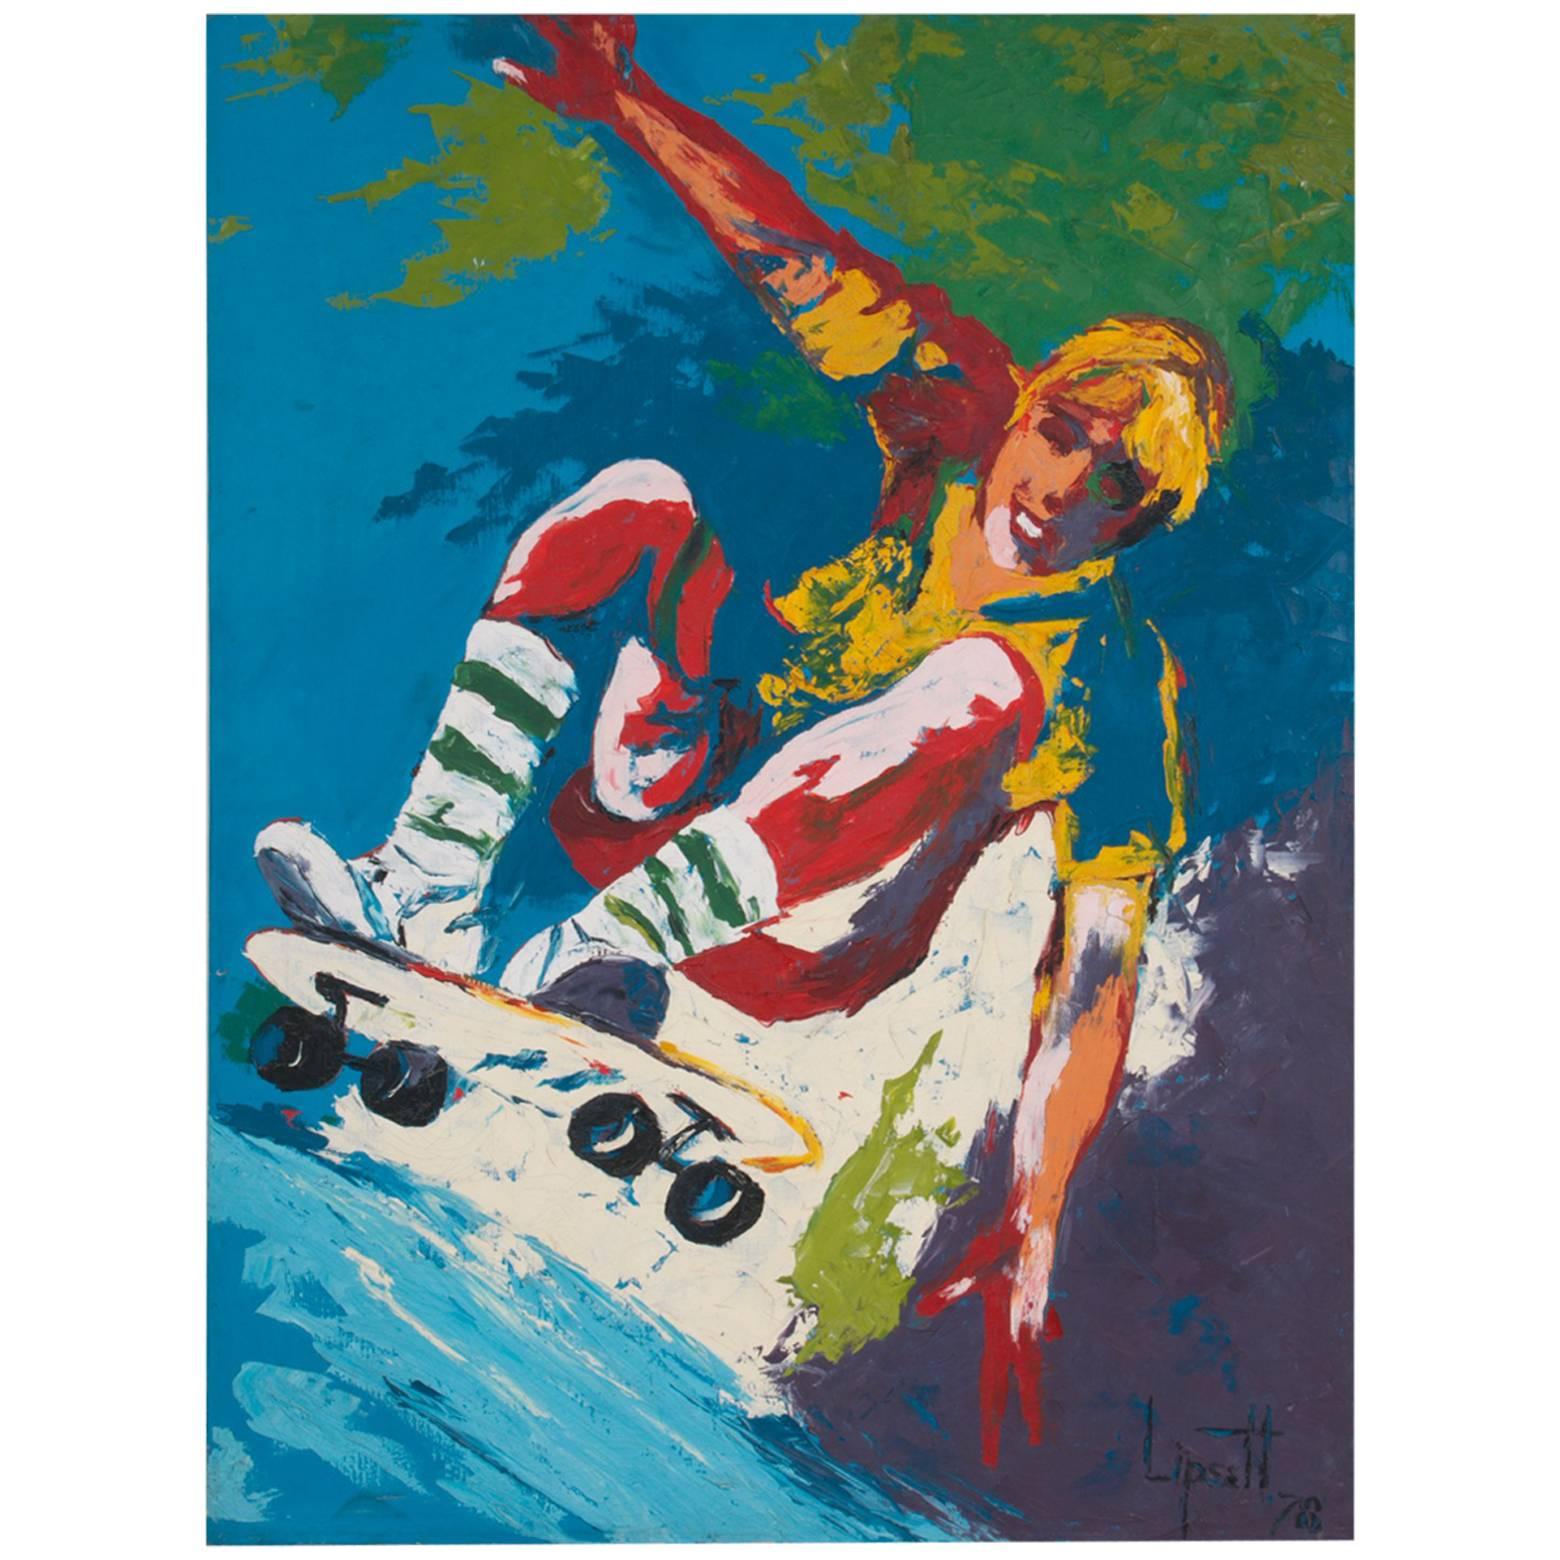 Colorful Dogtown Era California Skateboarder Oil Painting, Lipsett, 1978 For Sale